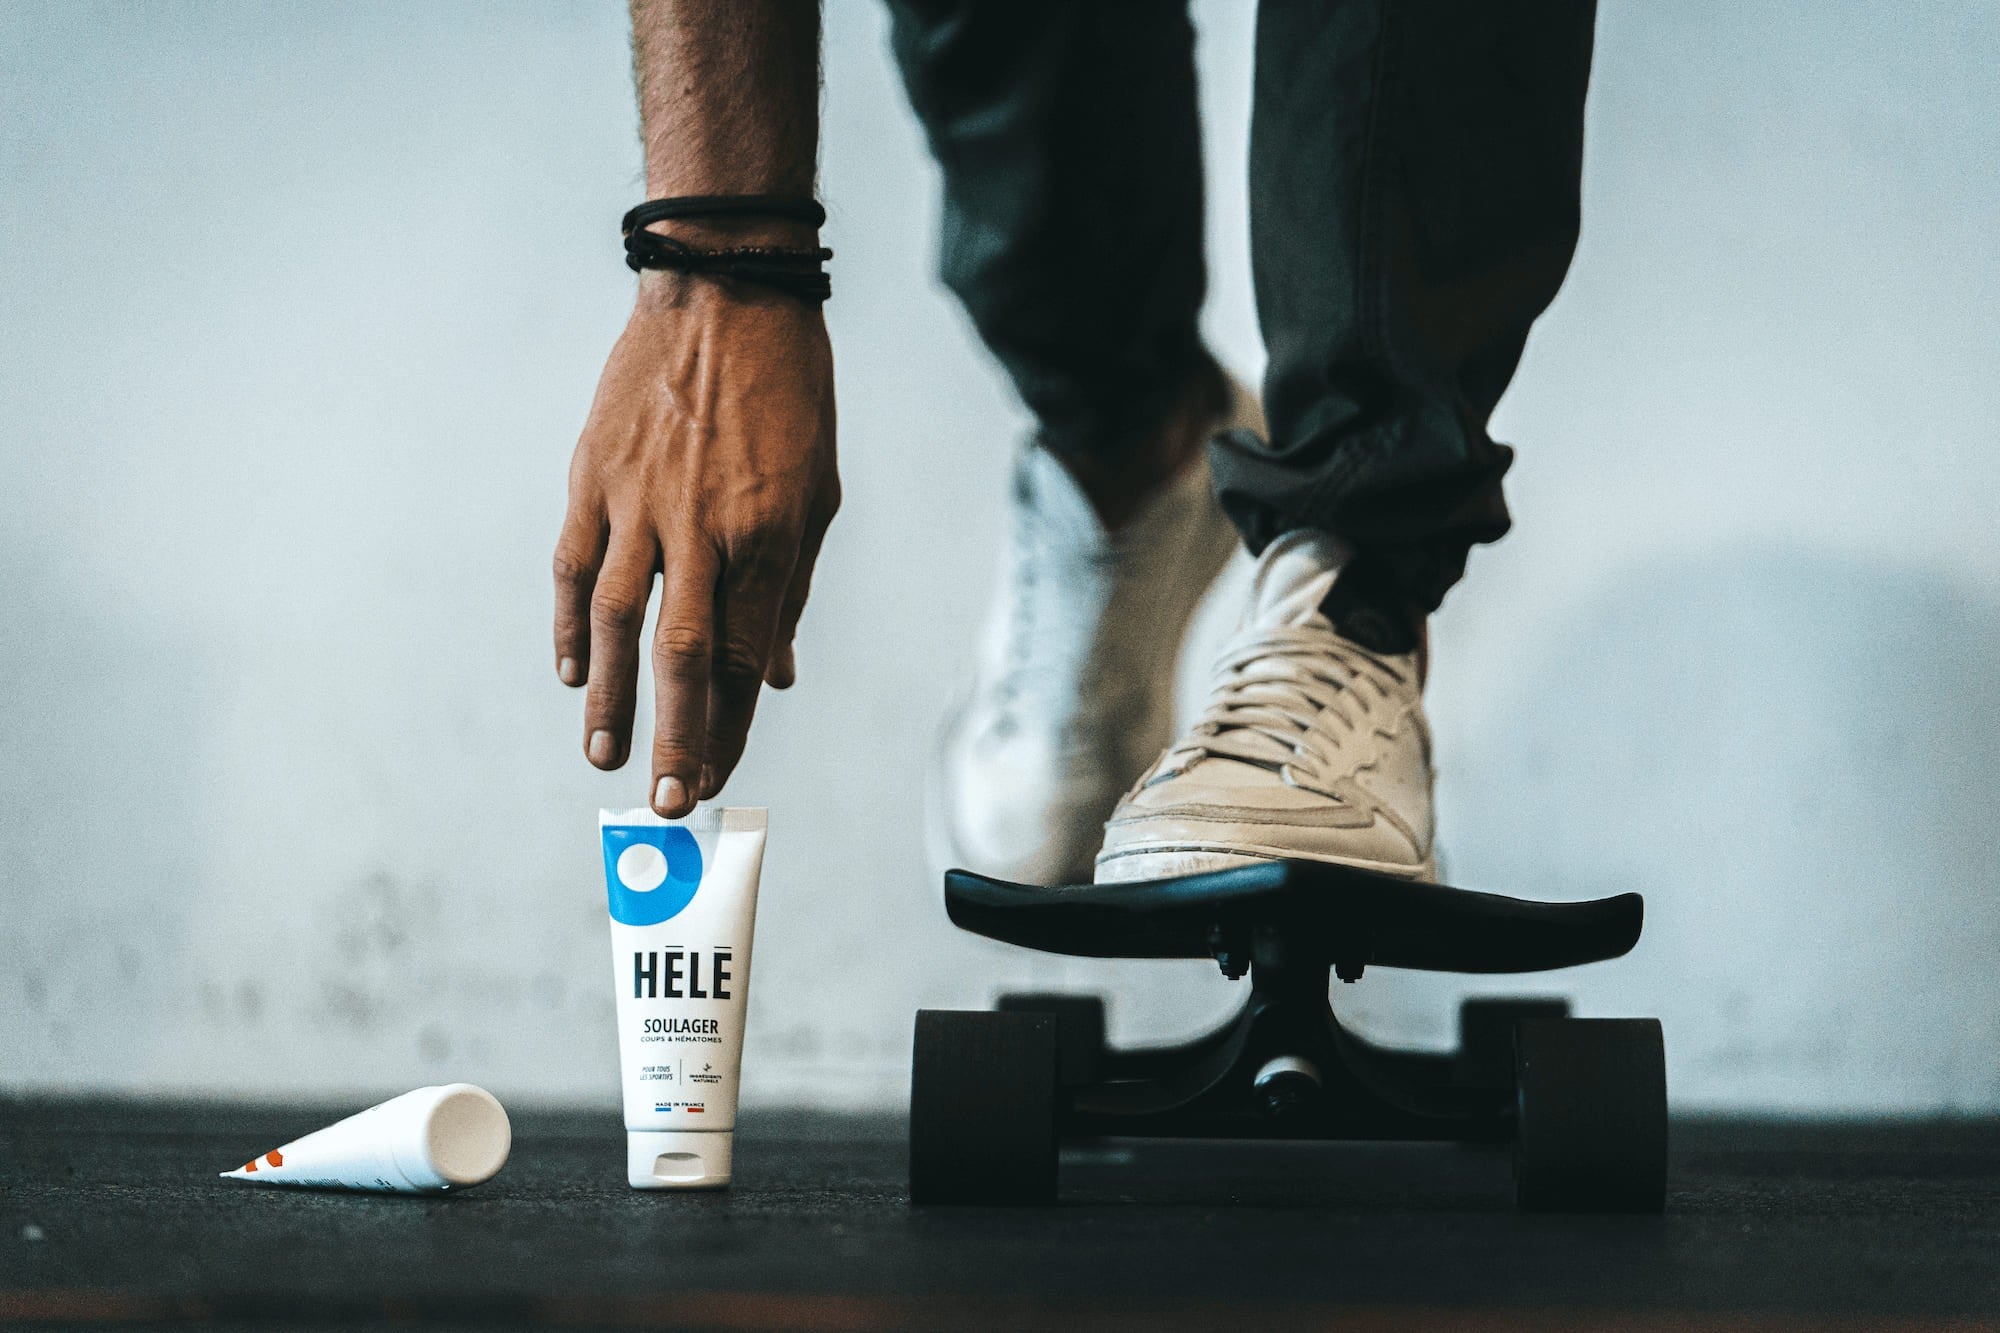 Sportif sur un skate-board en train de ramasser un tube de gel coups et hématomes Soulager de la marque HELE